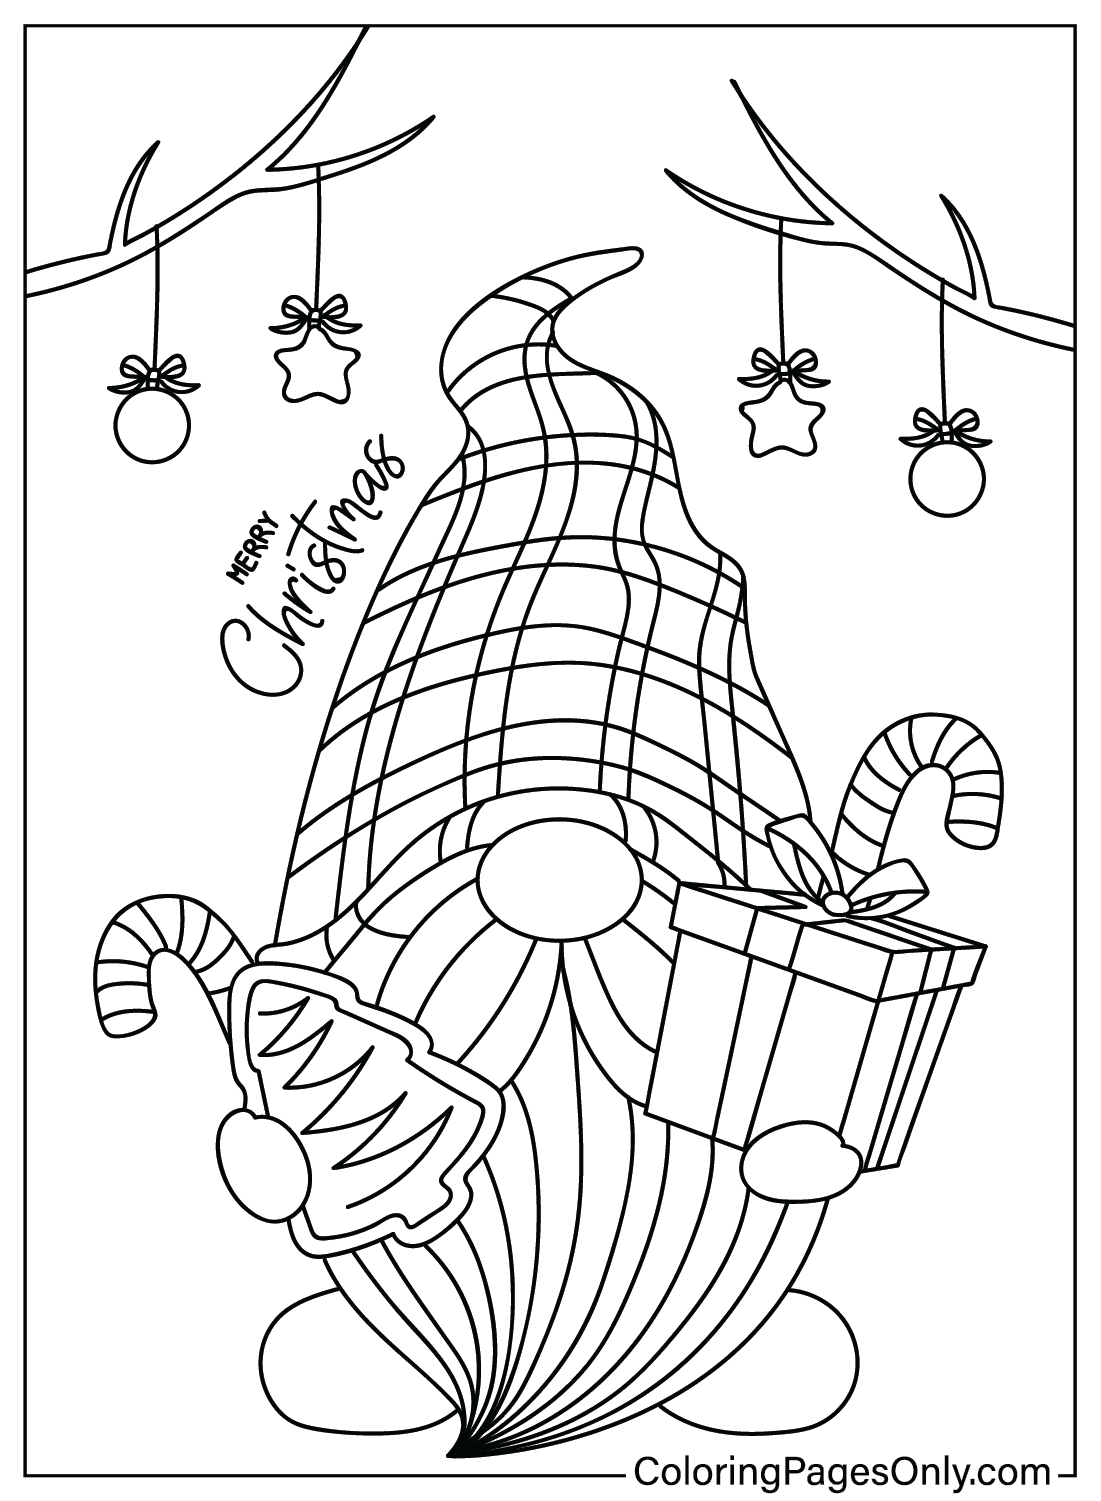 Imagen navideña de Gnomo para colorear de Gnome